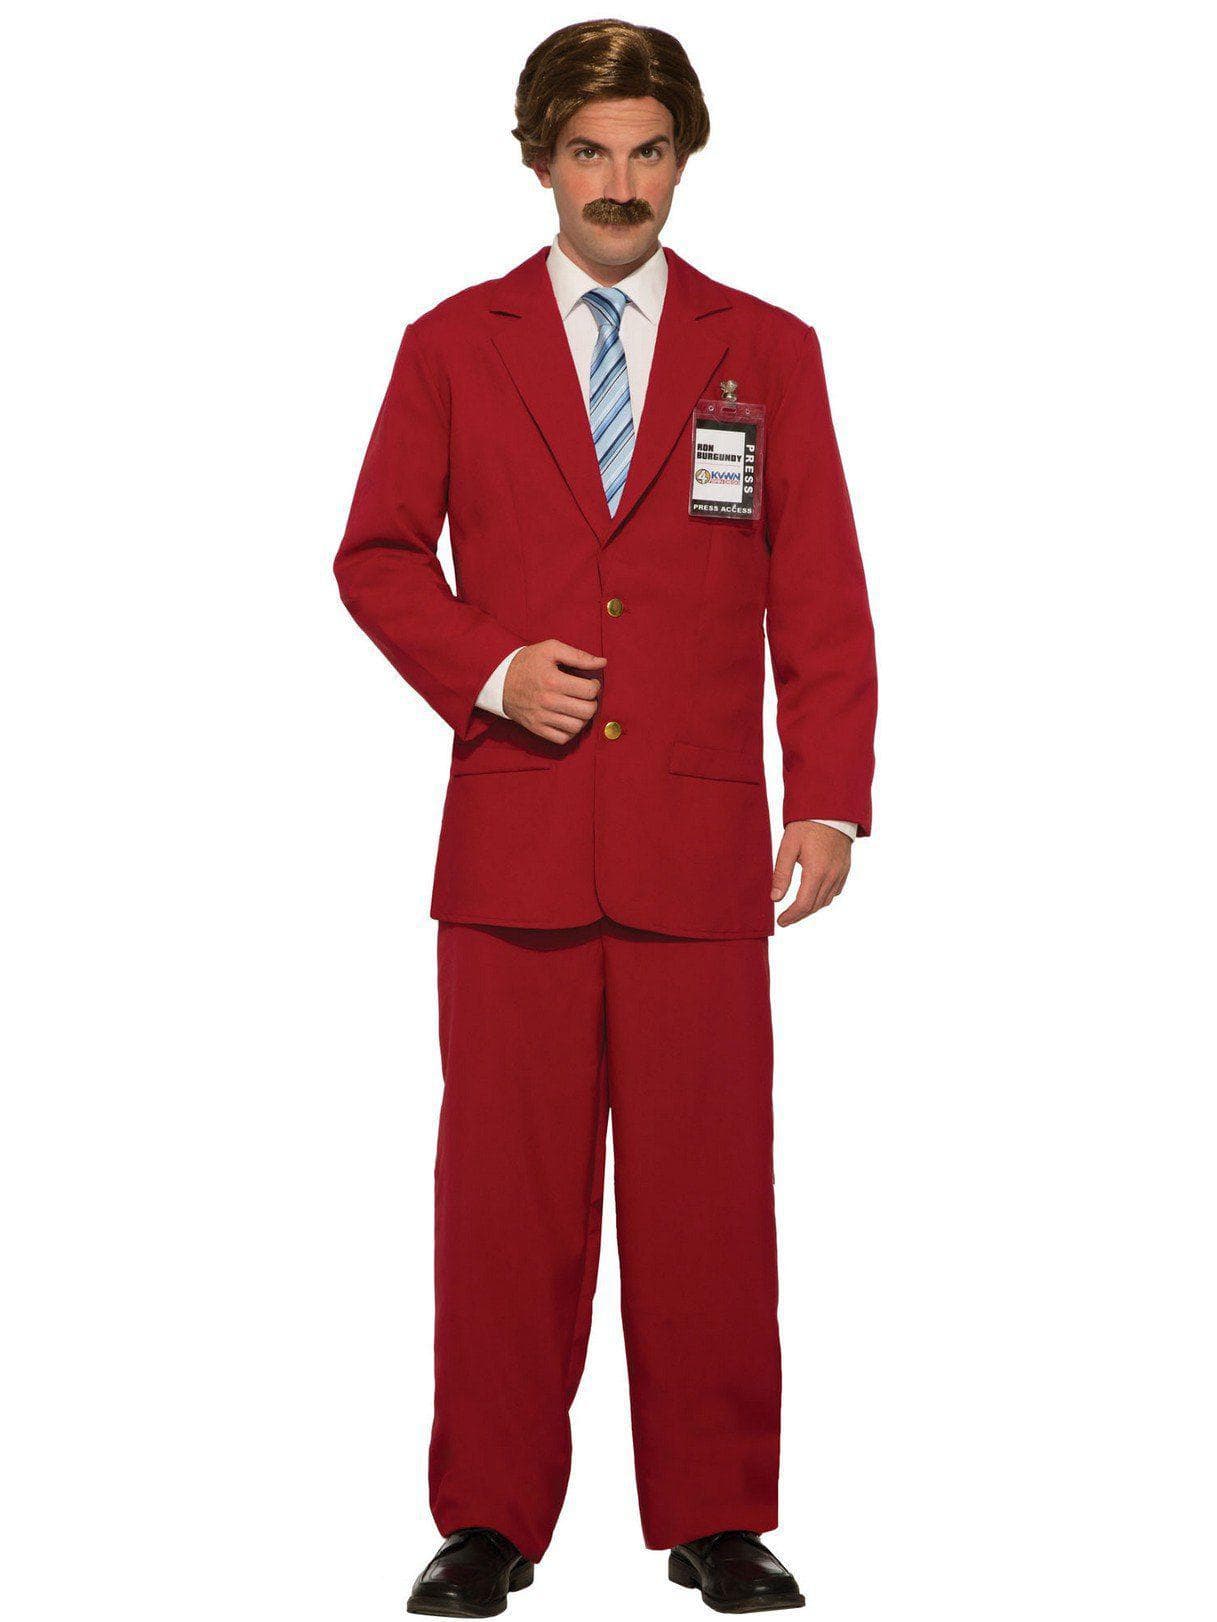 Men's Anchorman: The Legend of Ron Burgundy Leisure Suit - costumes.com